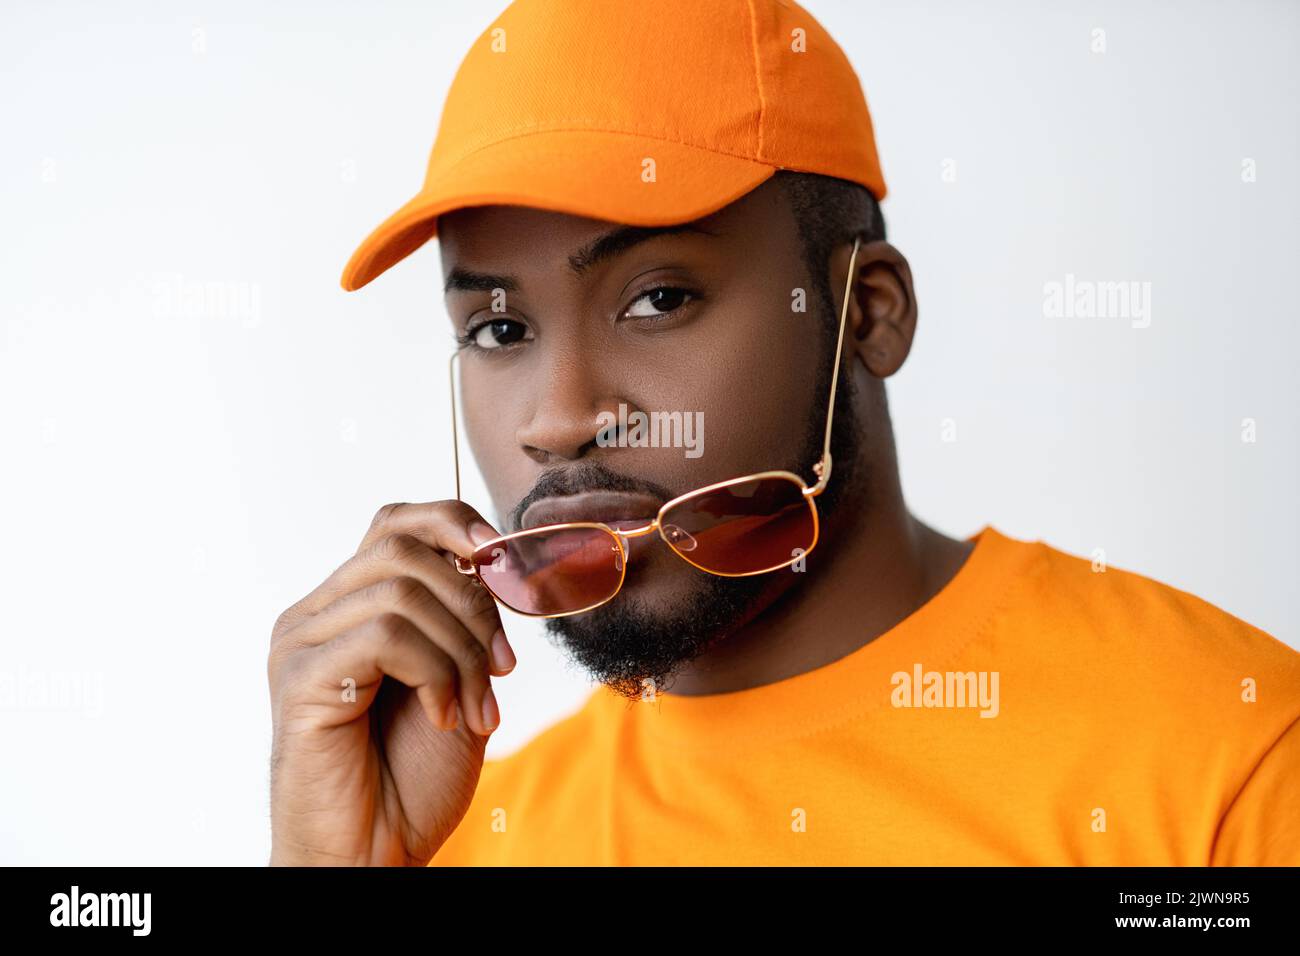 lunettes mode african man lunettes de soleil orange Banque D'Images